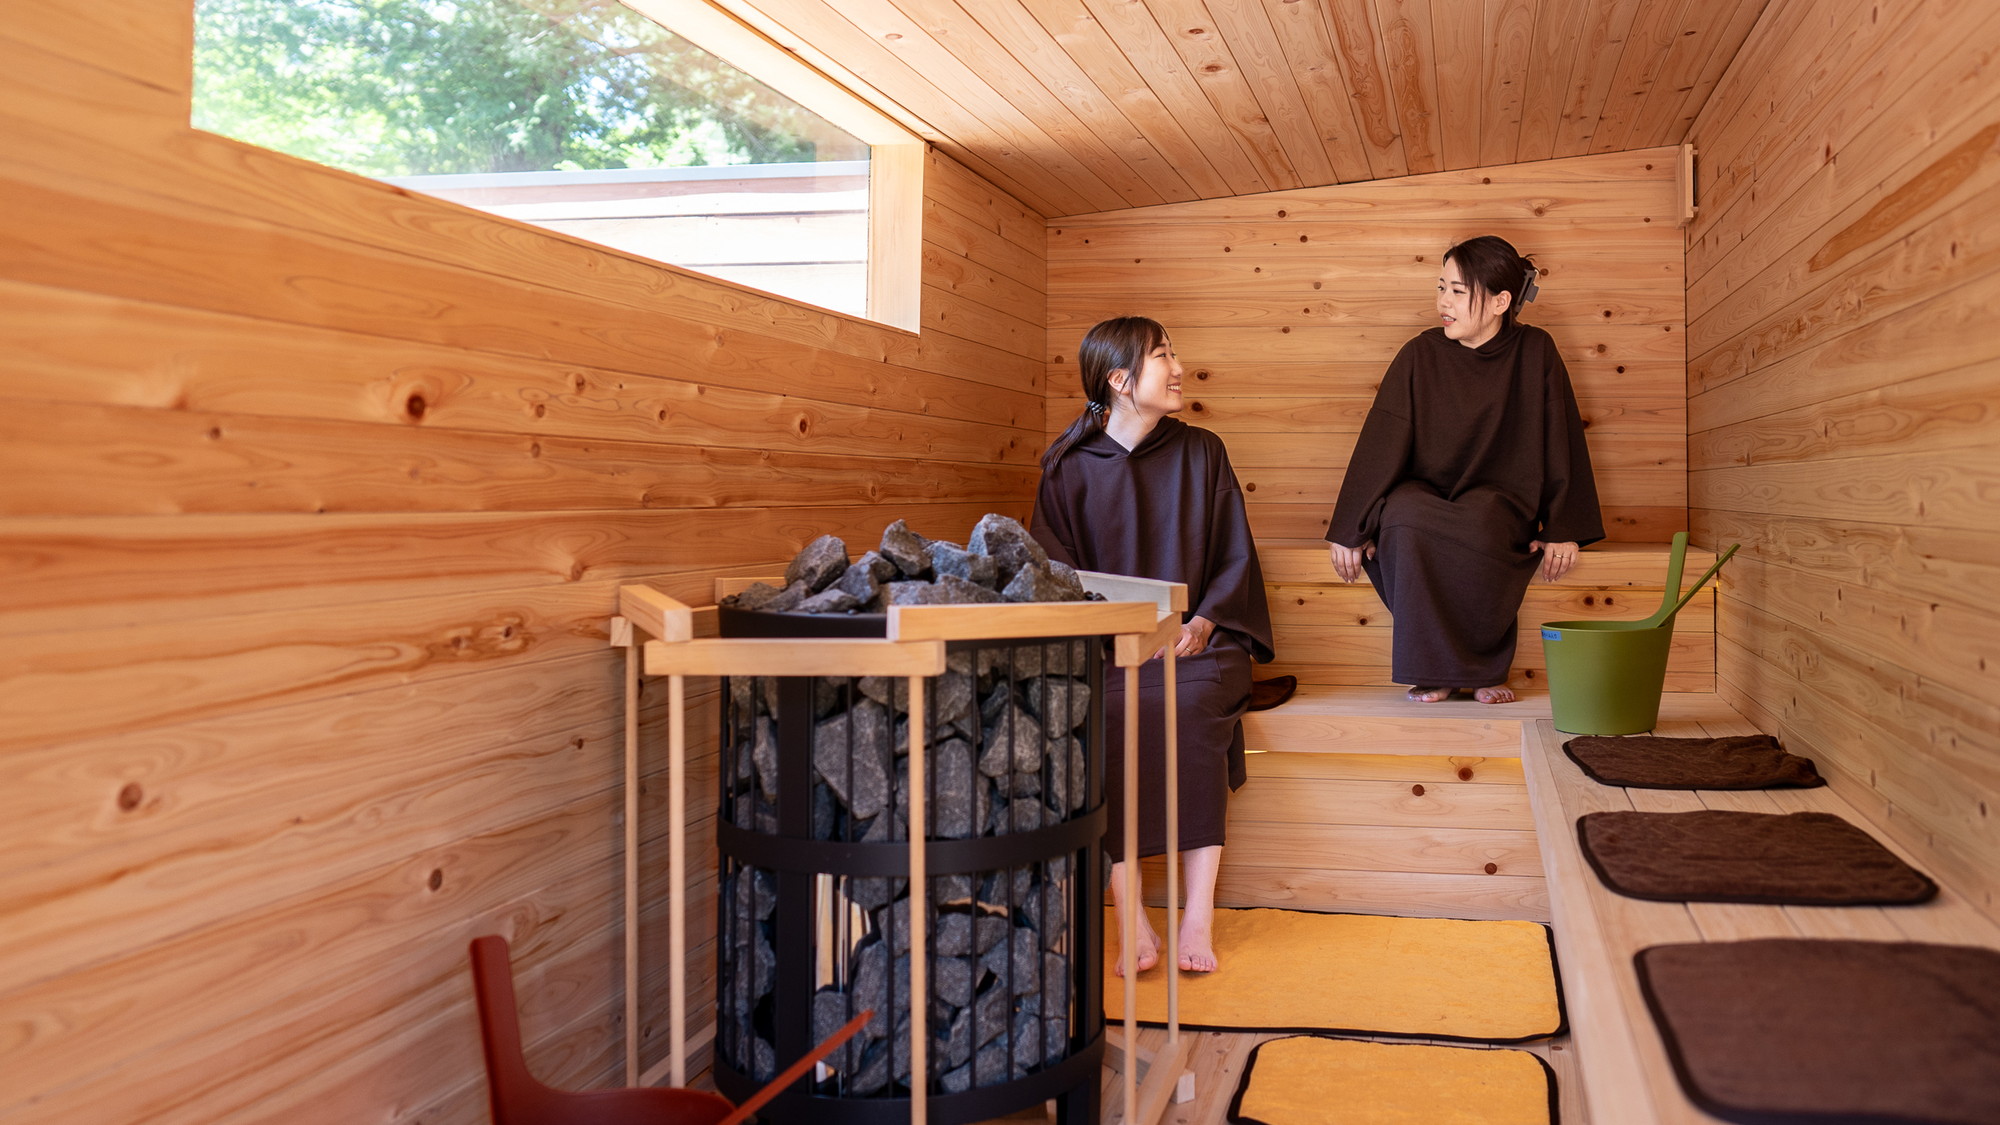 ◆木曽桧を使用した屋外サウナ「Forest Sauna」